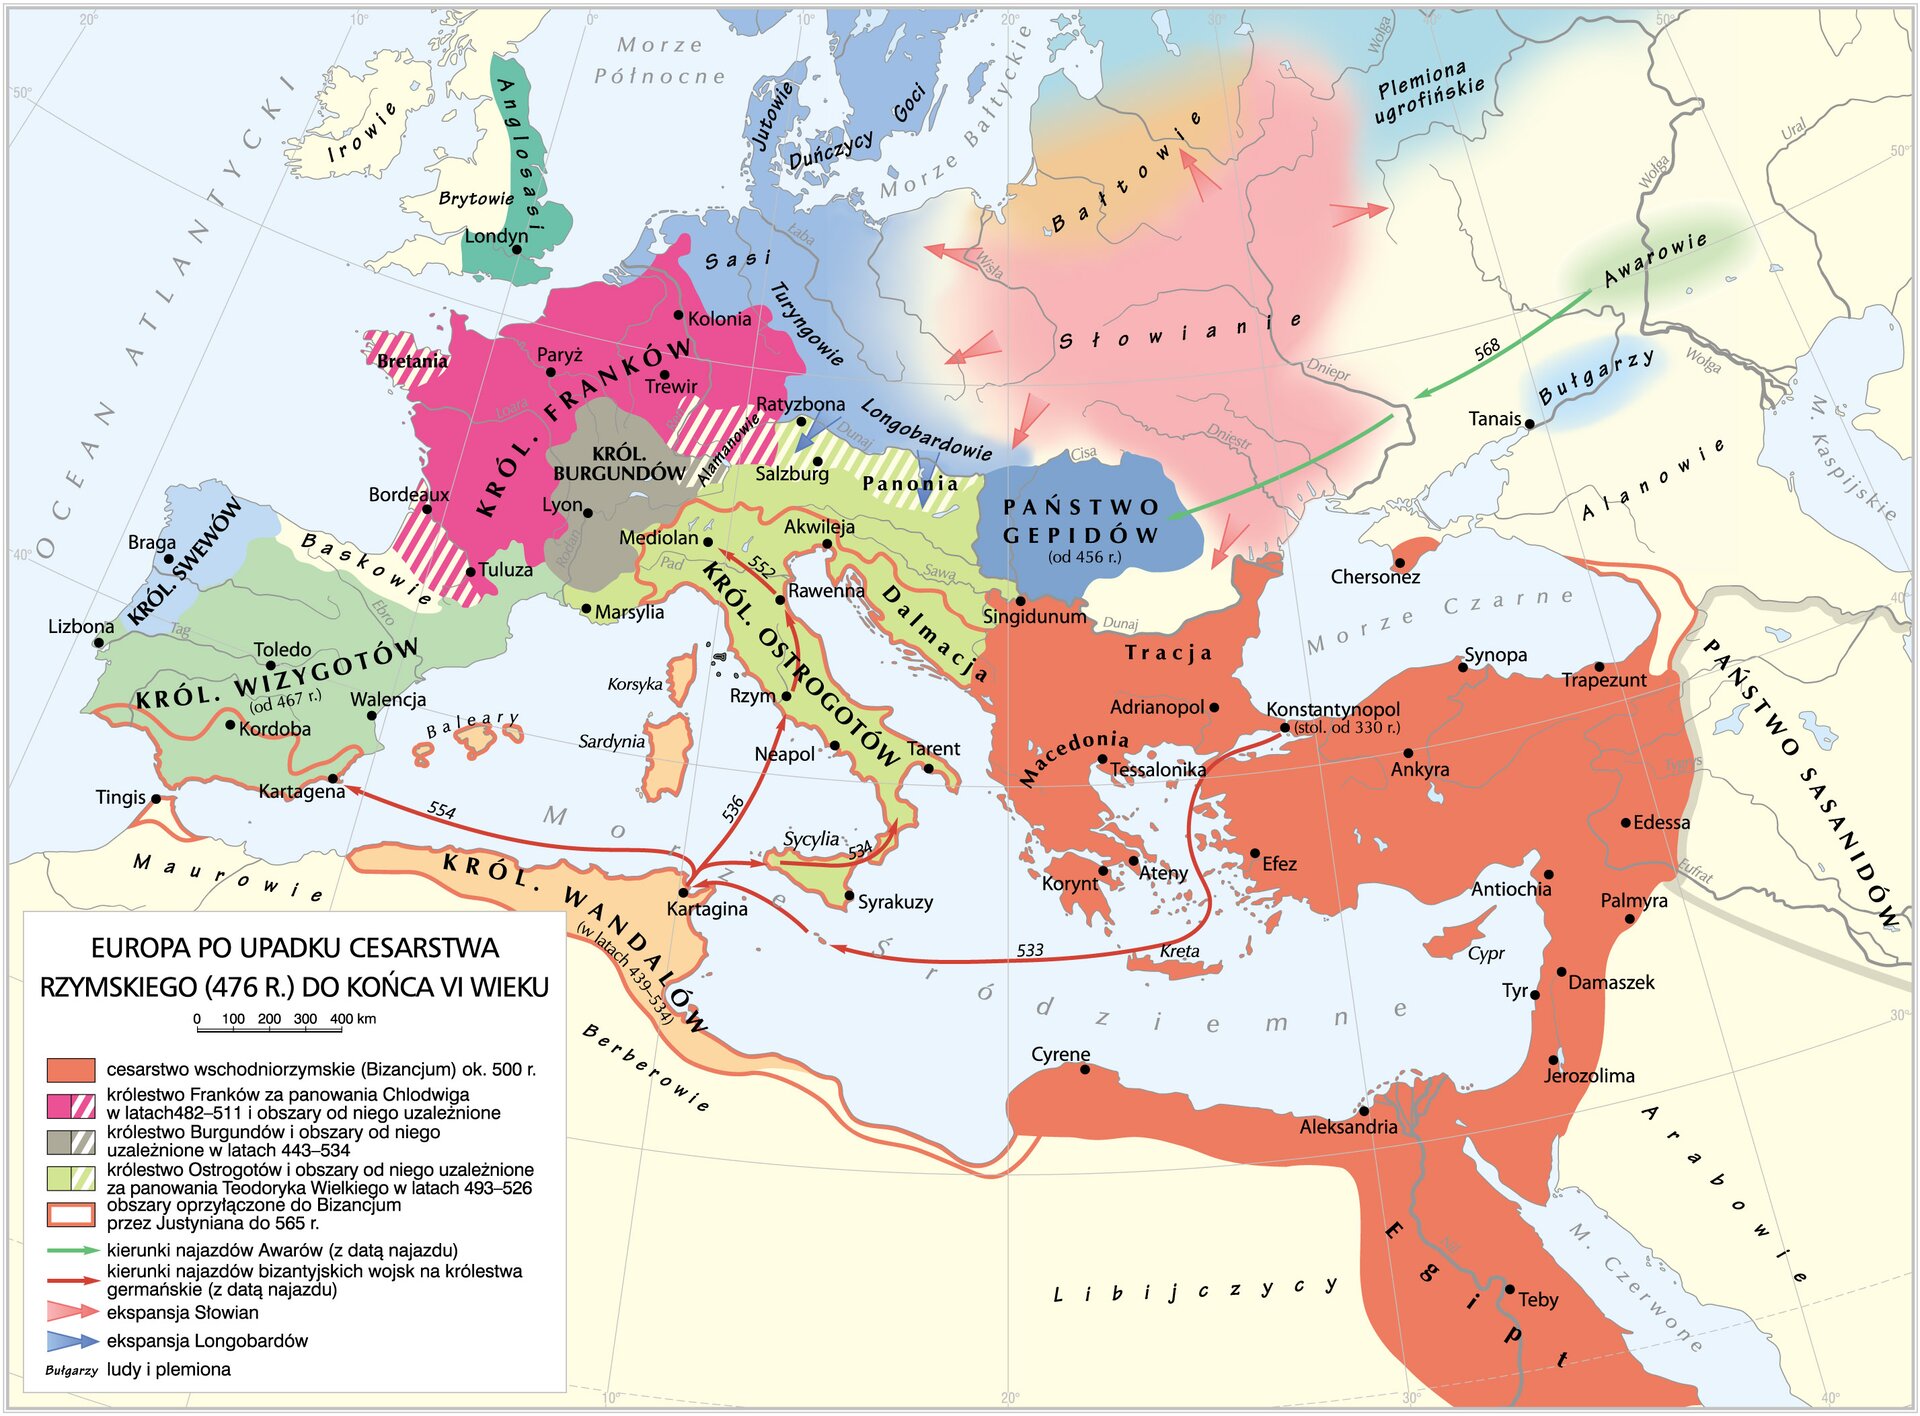 Mapa przedstawia Europę  oraz  Afrykę po upadku cesarstwa rzymskiego (476 r.) do końca VI wieku. Na mapie zaznaczono cesarstwo wschodniorzymskie (Bizancjum) ok. 500 r., które obejmuje: Kretę, Korynt, Ateny,  Tessalonikę, Macedonię, Adrianopol Singidunum, Trację, Konstantynopol, Efez, Ankyrę, Chersonez, Synopę, Trapezunt,  Antiochę, Edessę, Pamyrę, Damaszek, Cypr, Tyr, Jerozolimę, Aleksandrię, Egipt, Cyrenę. Sąsiaduje ono od wschodu z Państwem  Sasanidów, a od zachodu z Królestwem Wandalów oraz Ostrogotów. Od północy oblewa je Morze Czarne, a od południa Morze Śródziemne. 
 Królestwo Franków za panowania Chlodwiga w latach 482-511 i obszary od niego uzależnione to: Królestwo  Franków, Bretania,  Francja (Tuluza, Bordeaux, Trewir). Sąsiaduje z Królestwem Wizygotów od zachodu, od południa z  Królestwem Burgundów.
Królestwo Burgundów i obszary od niego uzależnione w latach 443-534 obejmuje  Królestwo Burgundów z Lyonem. Sąsiaduje z Królestwem Franków od północy i zachodu, z Królestwem Wizygotów od zachodu i Królestwem Ostrogotów od południa.
Królestwo Ostrogotów i obszary od niego uzależnione za panowania Teodoryka Wielkiego w latach 493-526 obejmuje Królestwo Ostrogotów. Mediolan, Marsylię, Rzym, Neapol, Sycylię,  Tarent, Akwileję, Dalmację, Salzburg, Panonię. Sąsiaduje z Państwem Gepidów oraz Bizancjum od wschodu, od południa oblewa je Morze Śródziemne, od północy z Królestwem Franków i od zachodu z Królestwem Burgundów.
Obszary przyłączone do Bizancjum przez Justyniana do 565 r. obejmują: Królestwo Wandalów, Królestwo Ostrogotów, Dalmację, Sardynię, Korsykę,  Baleary, część Królestwa Wizygotów (Kordoba, Kartagena, Tingis), Turcja (okolice Trapezuntu).
Na mapie zaznaczono kierunki najazdu Awarów (z datą najazdu), które skierowane były na Państwo Gepidów w 568 r.  Kierunki najazdów bizantyjskich wojsk na królestwa germańskie (z datą najazdu):  Kartagina w 533 r.,  Sycylia w 534 r., Neapol w 536 r., Kartagena w 554 r., Mediolan w 552 r. Ekspansja Słowian obejmowała Dniepr, Morze Czarne,  Dniestr, dorzecze Wołgi, Królestwo Franków. Ekspansja Longobardów to Salzburg i  Panonia.